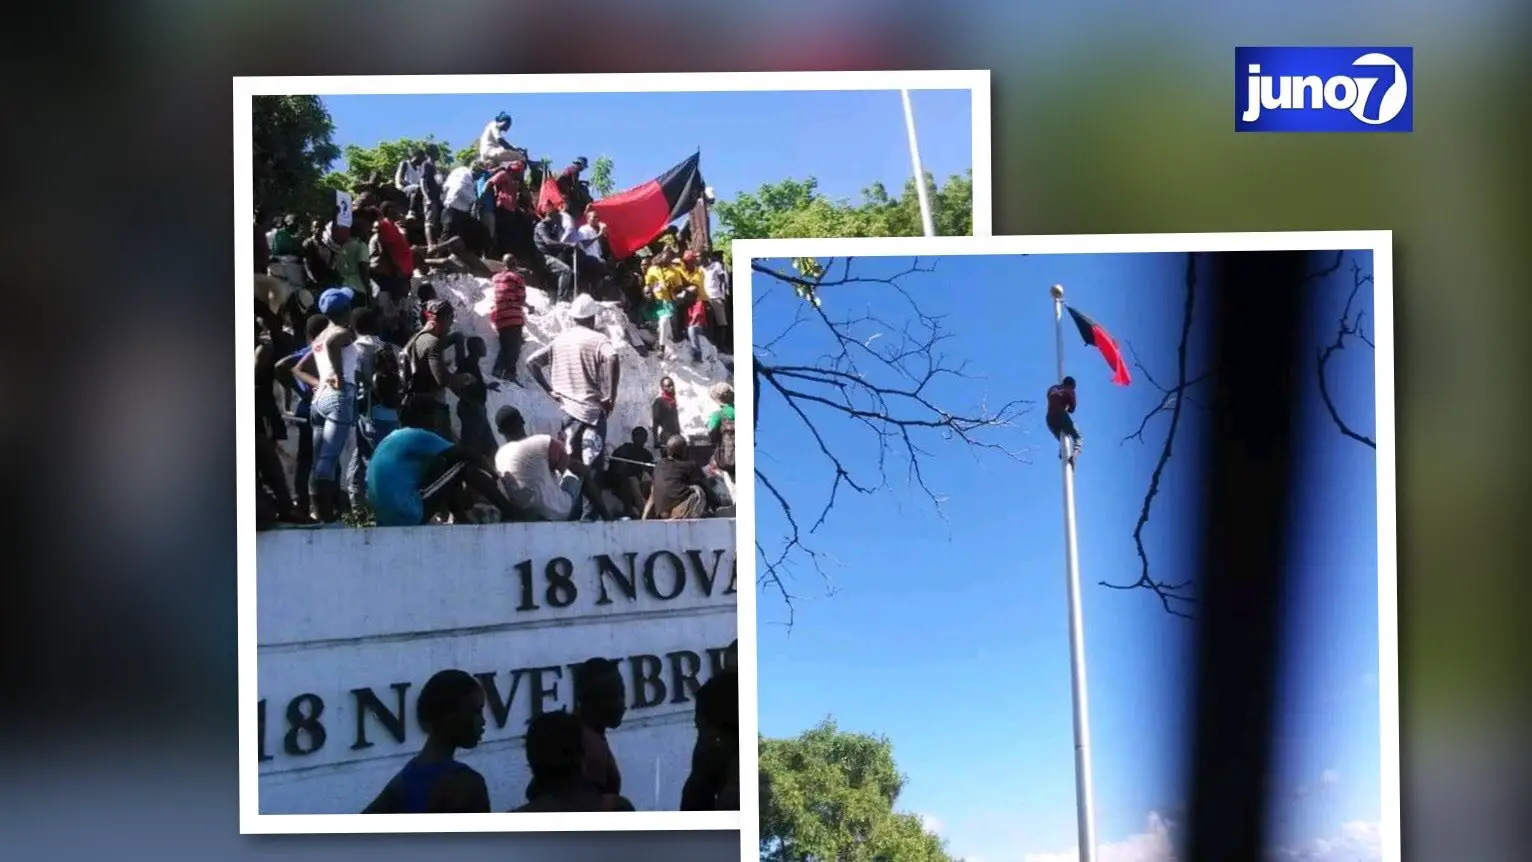 10 novembre 2018 : Jean-Charles Moïse fait hisser le drapeau noir et rouge dessalinien à Vertières